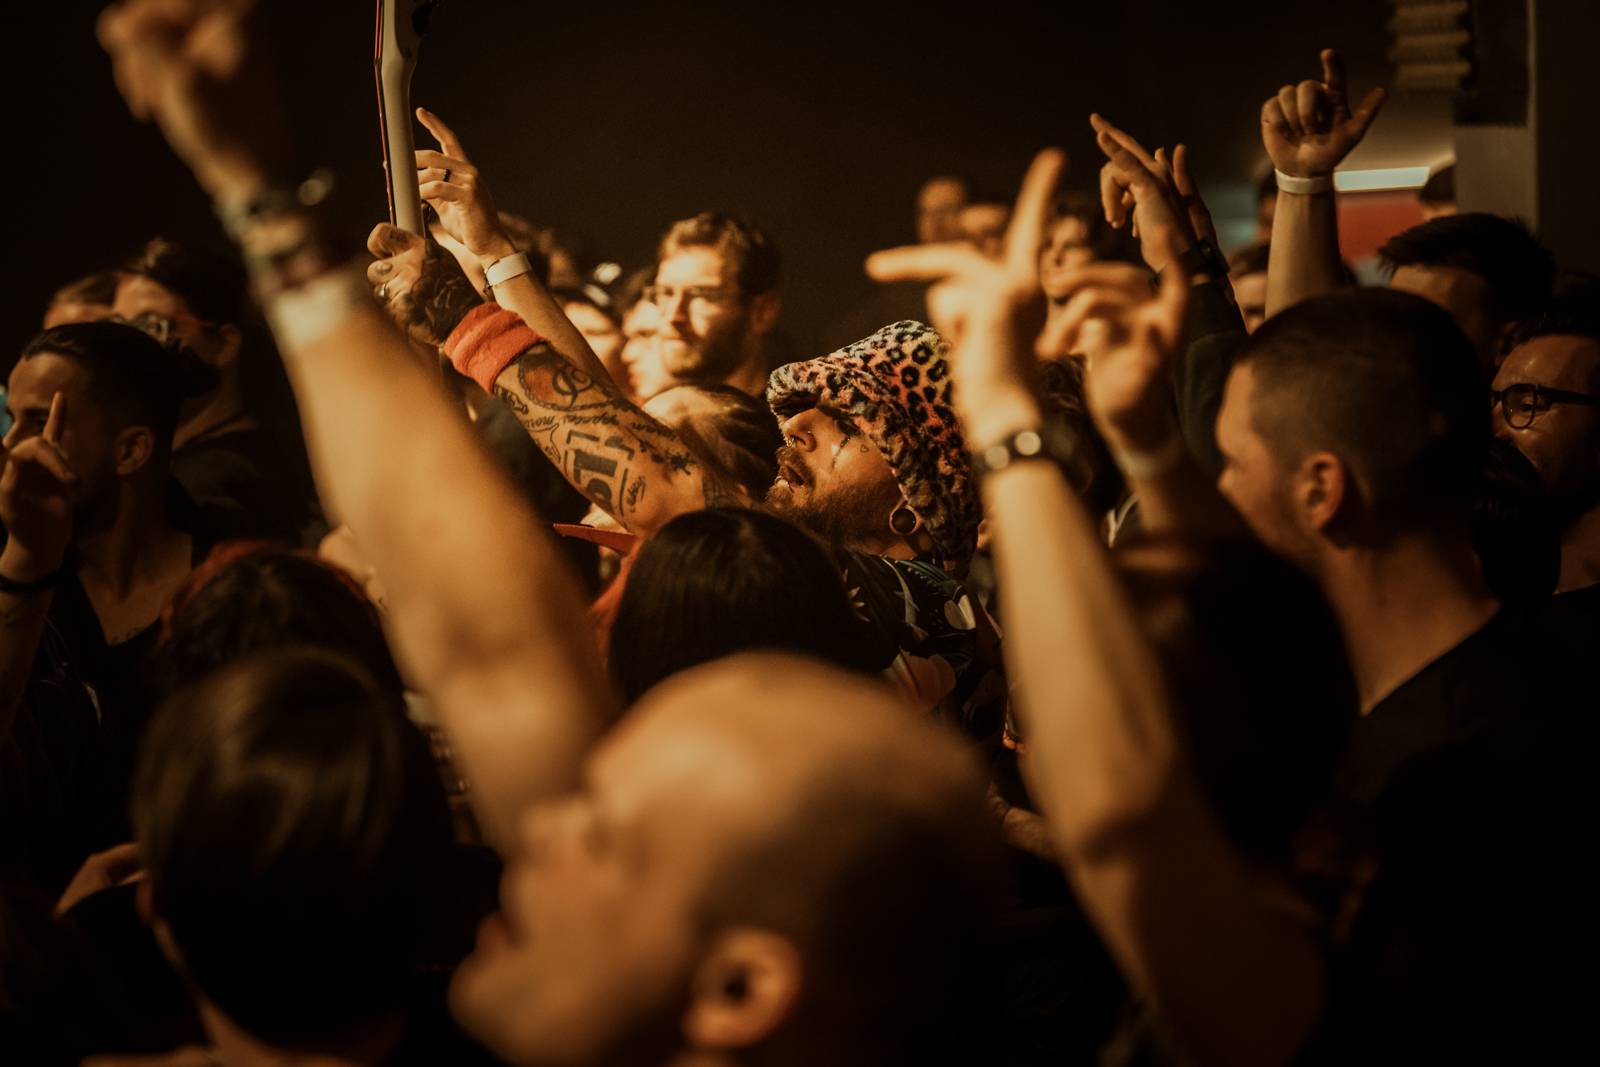 Normandie v Praze aneb Švédská invaze v MeetFactory s příchutí alt-rocku